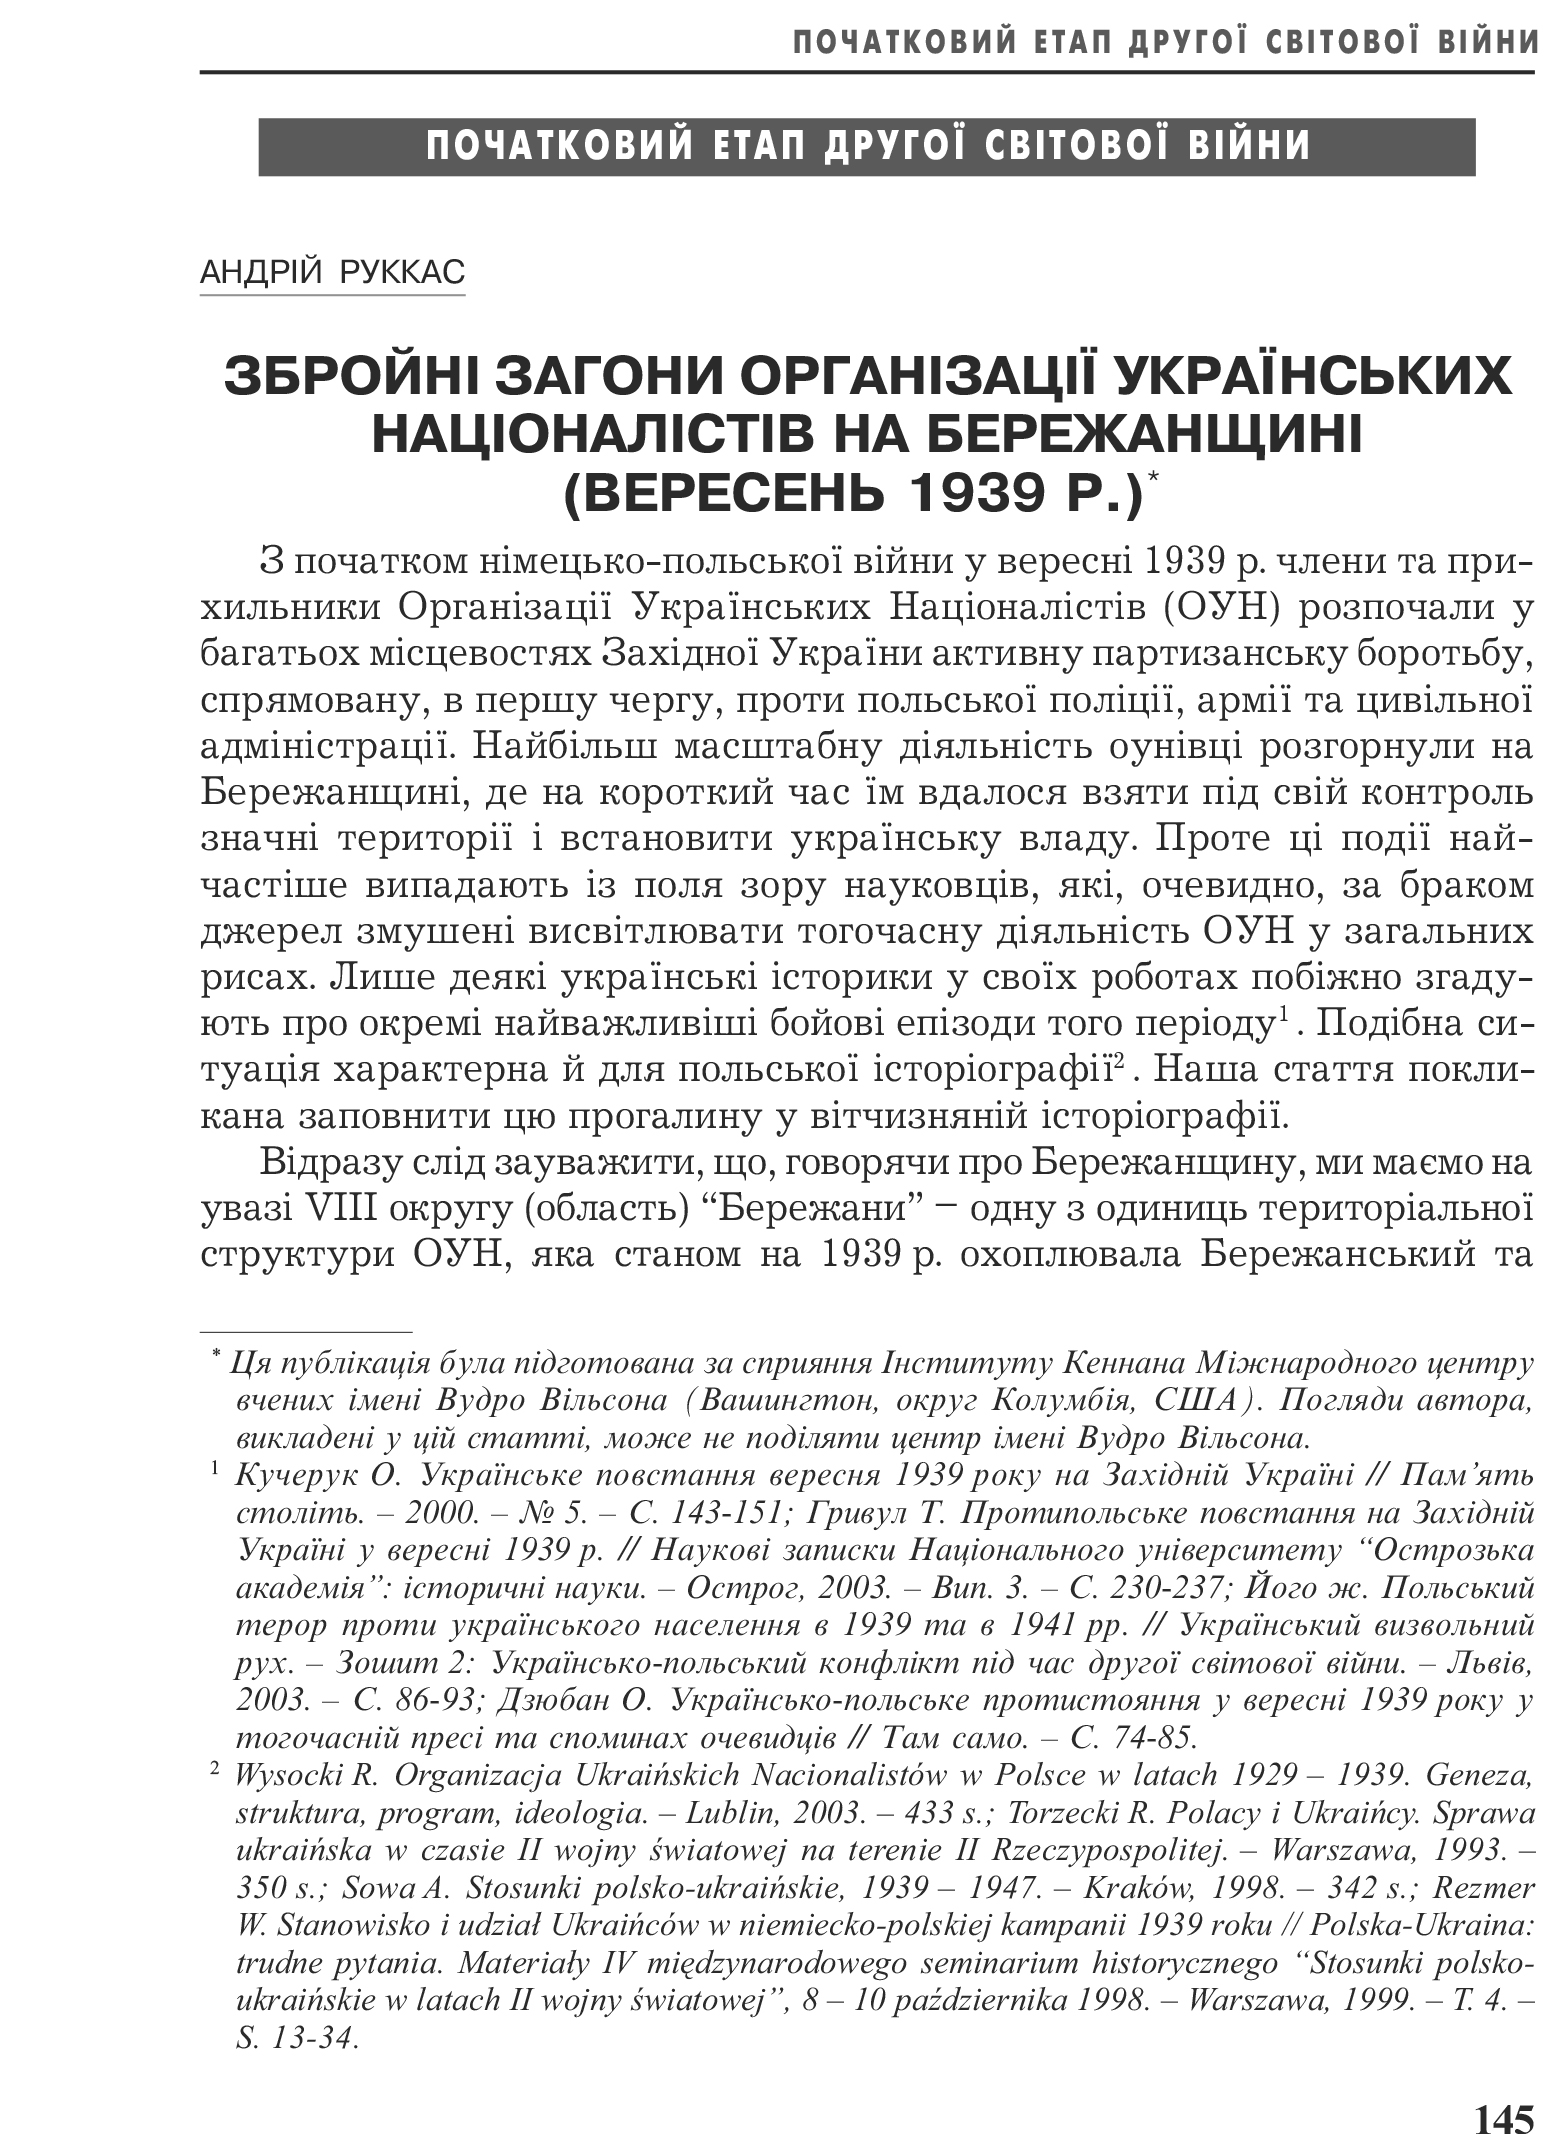 Український визвольний рух №3, ст. 145 - 159